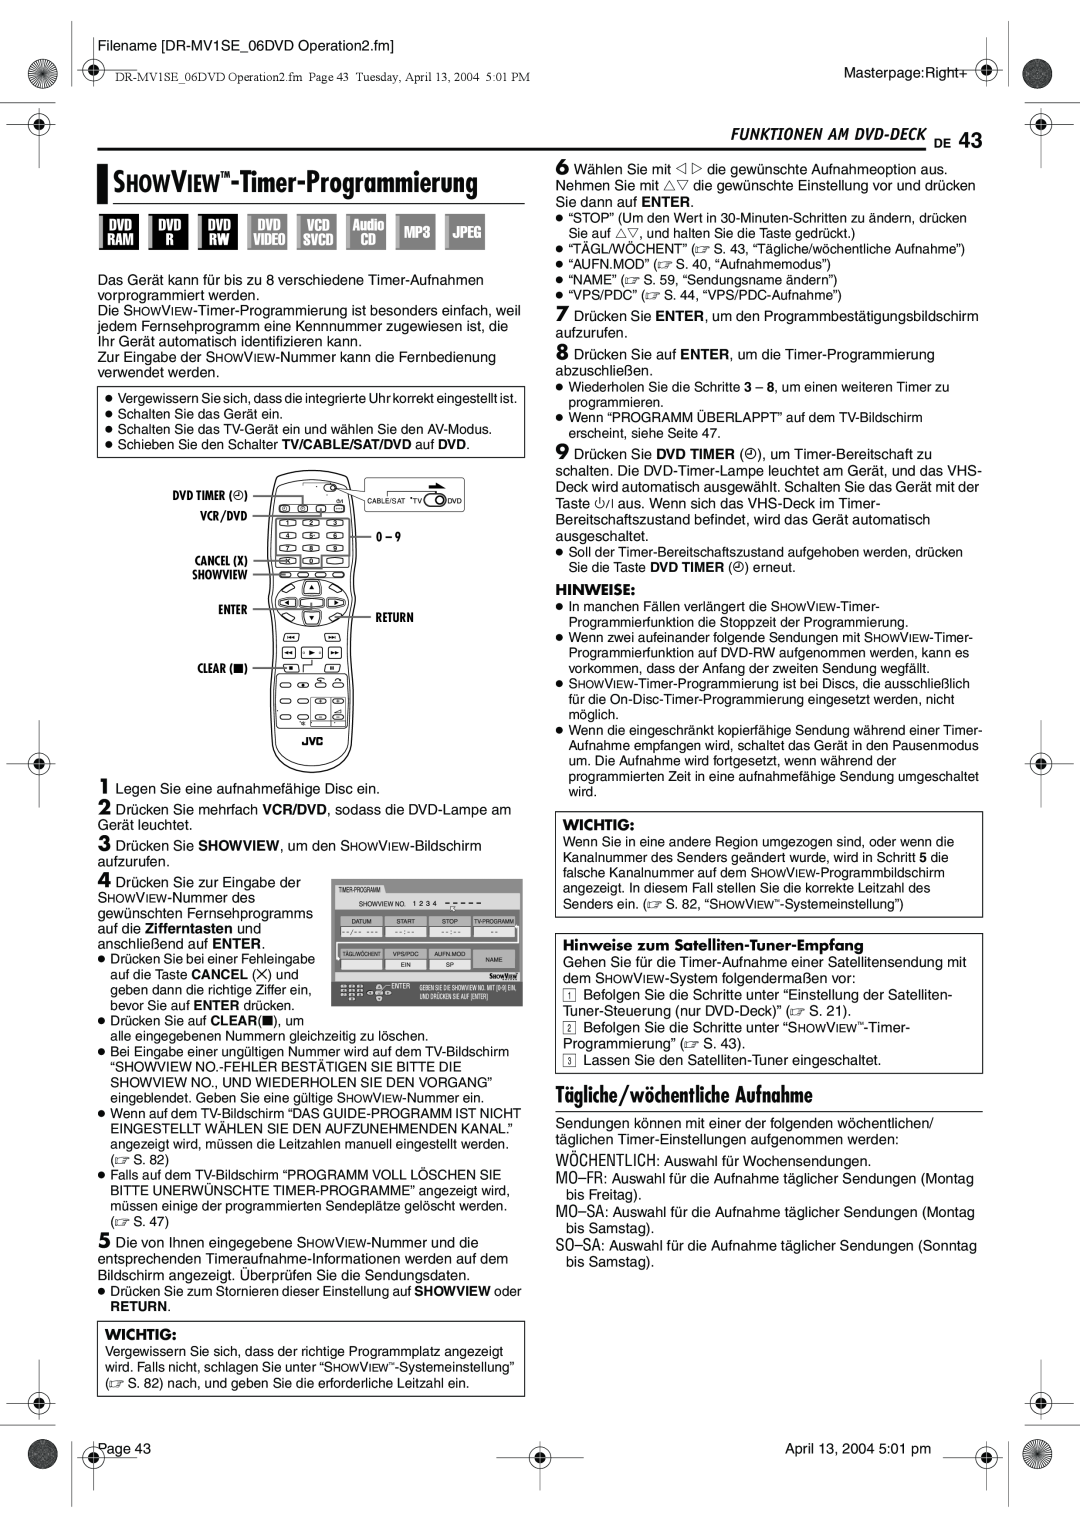 JVC DR-MV1S manual Tägliche/wöchentliche Aufnahme, Wichtig, Hinweise zum Satelliten-Tuner-Empfang 